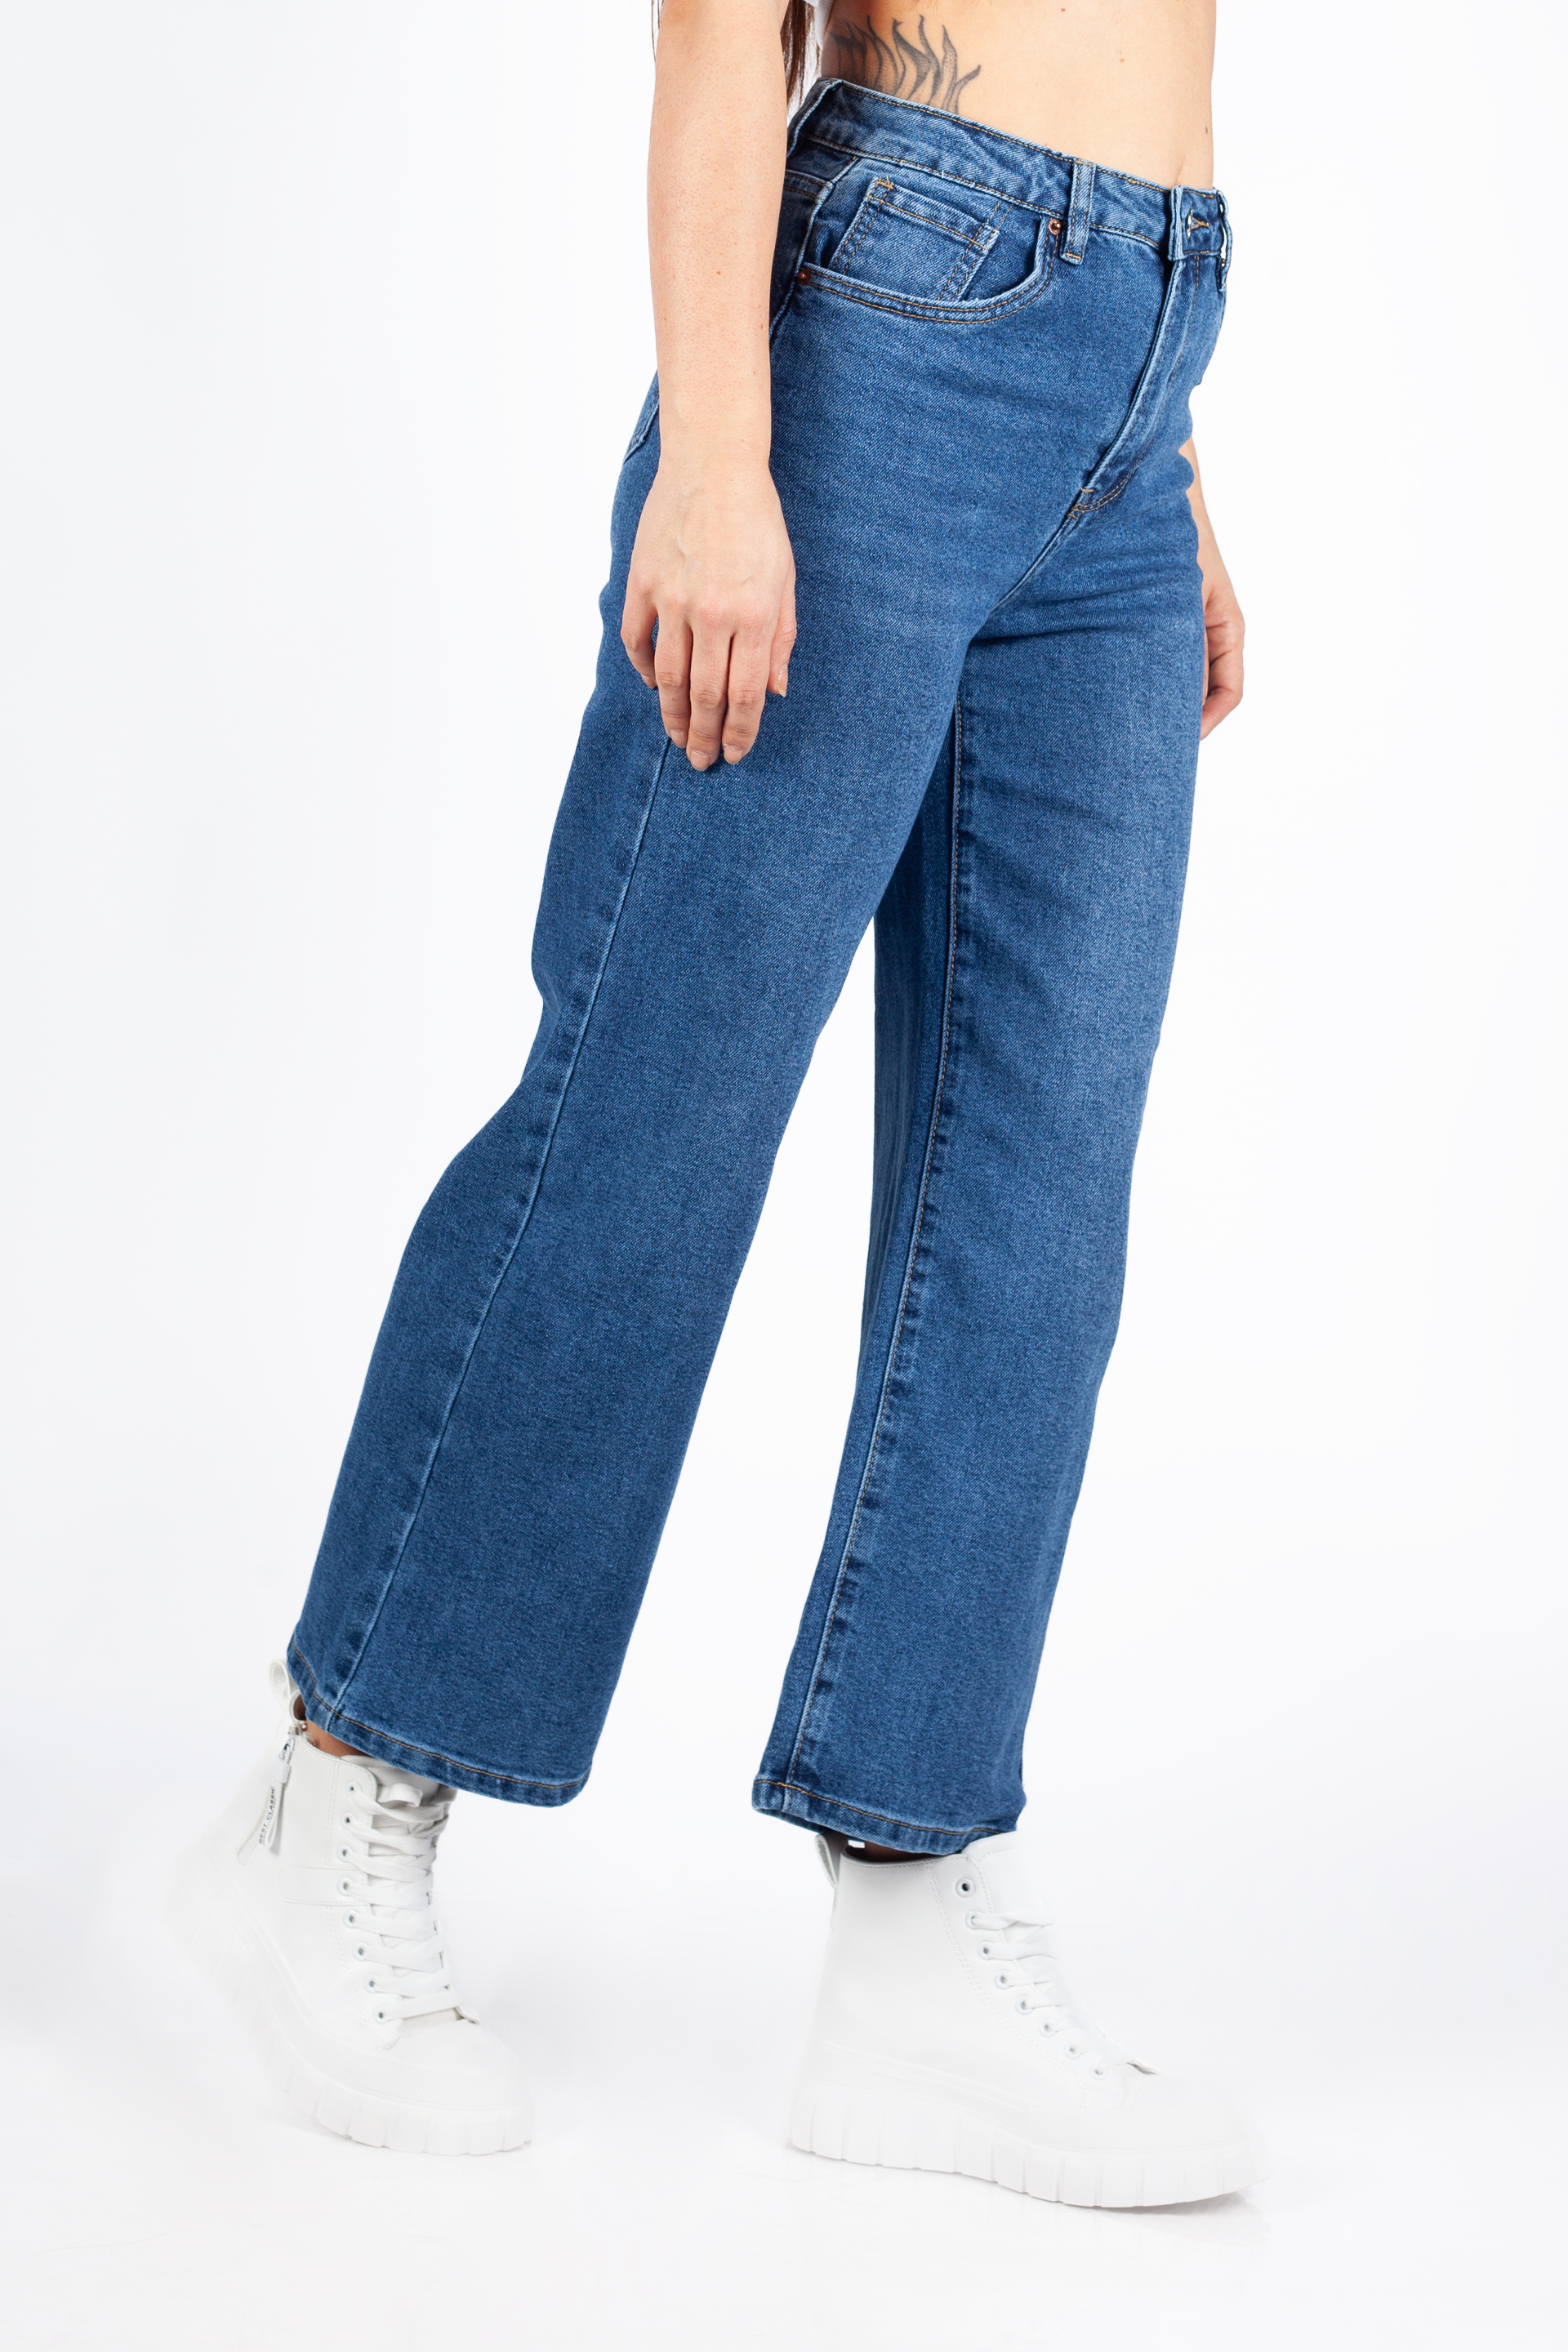 Jeans VS MISS VS8125